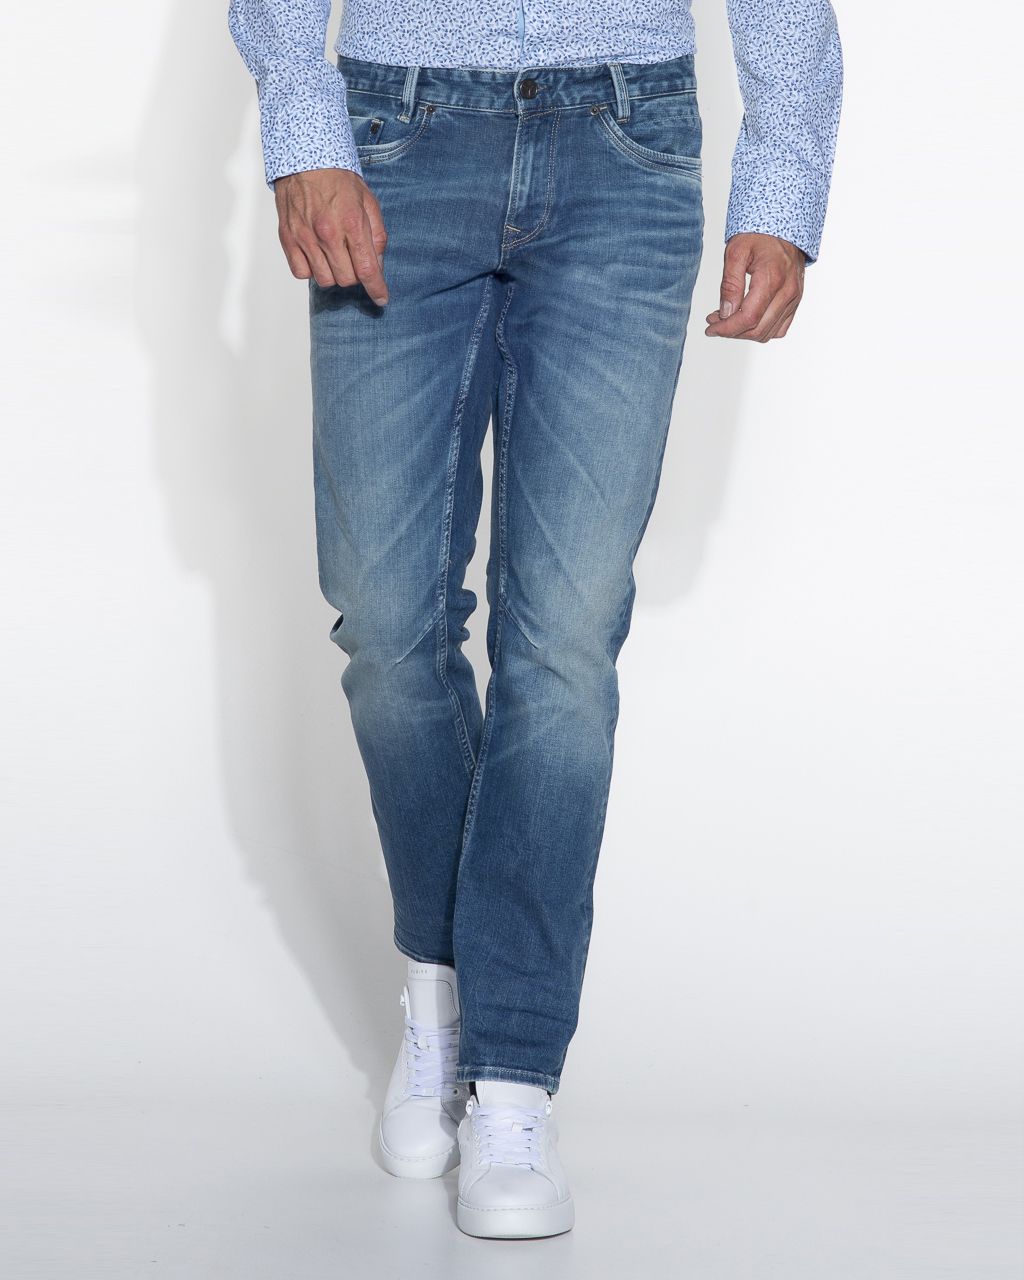 PME Legend Skymaster Jeans | Shop nu - Only for Men